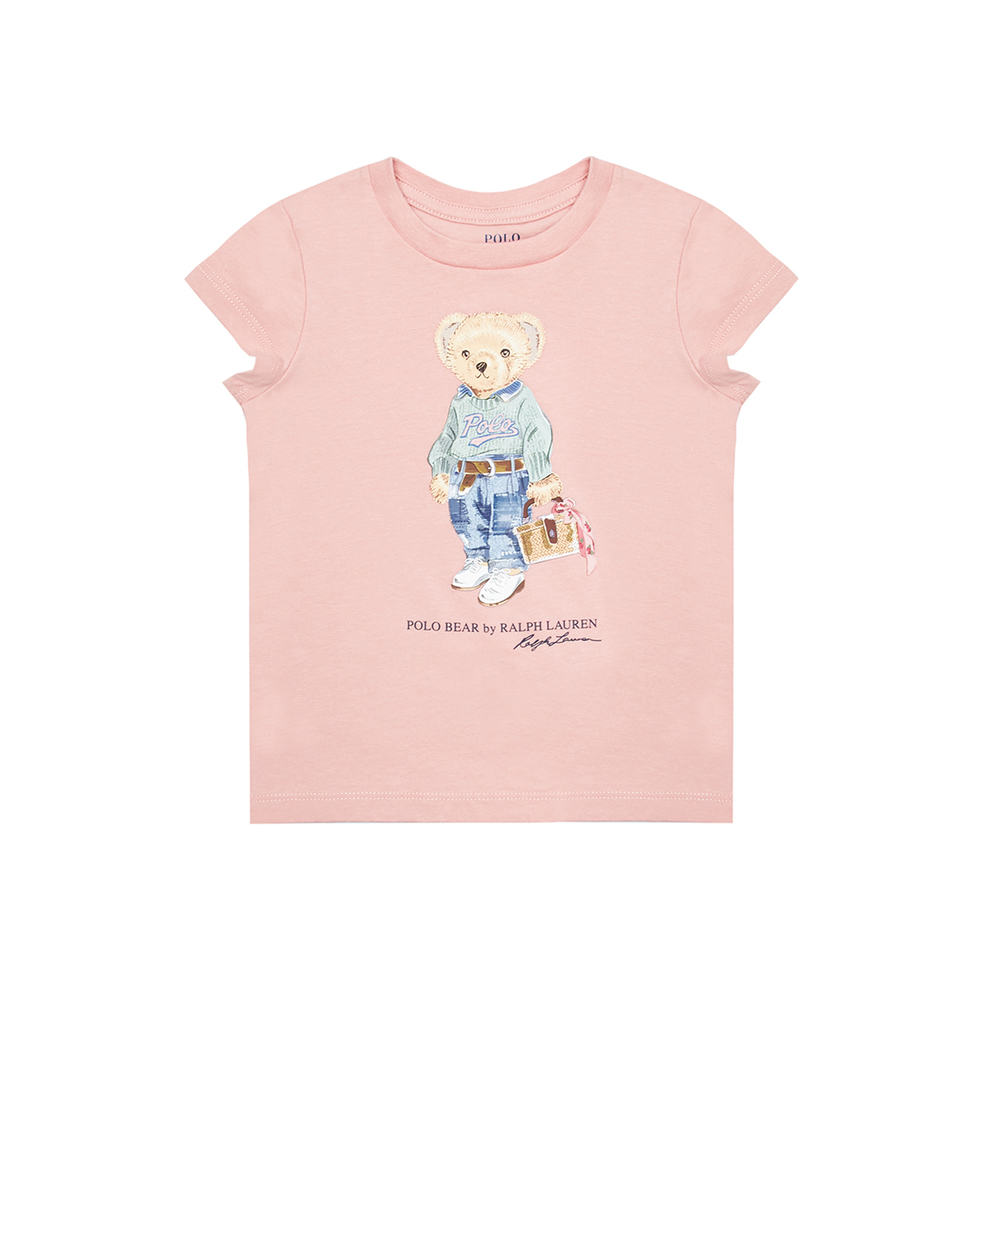 Детская футболка Polo Bear Polo Ralph Lauren Kids 310875408002, розовый цвет • Купить в интернет-магазине Kameron